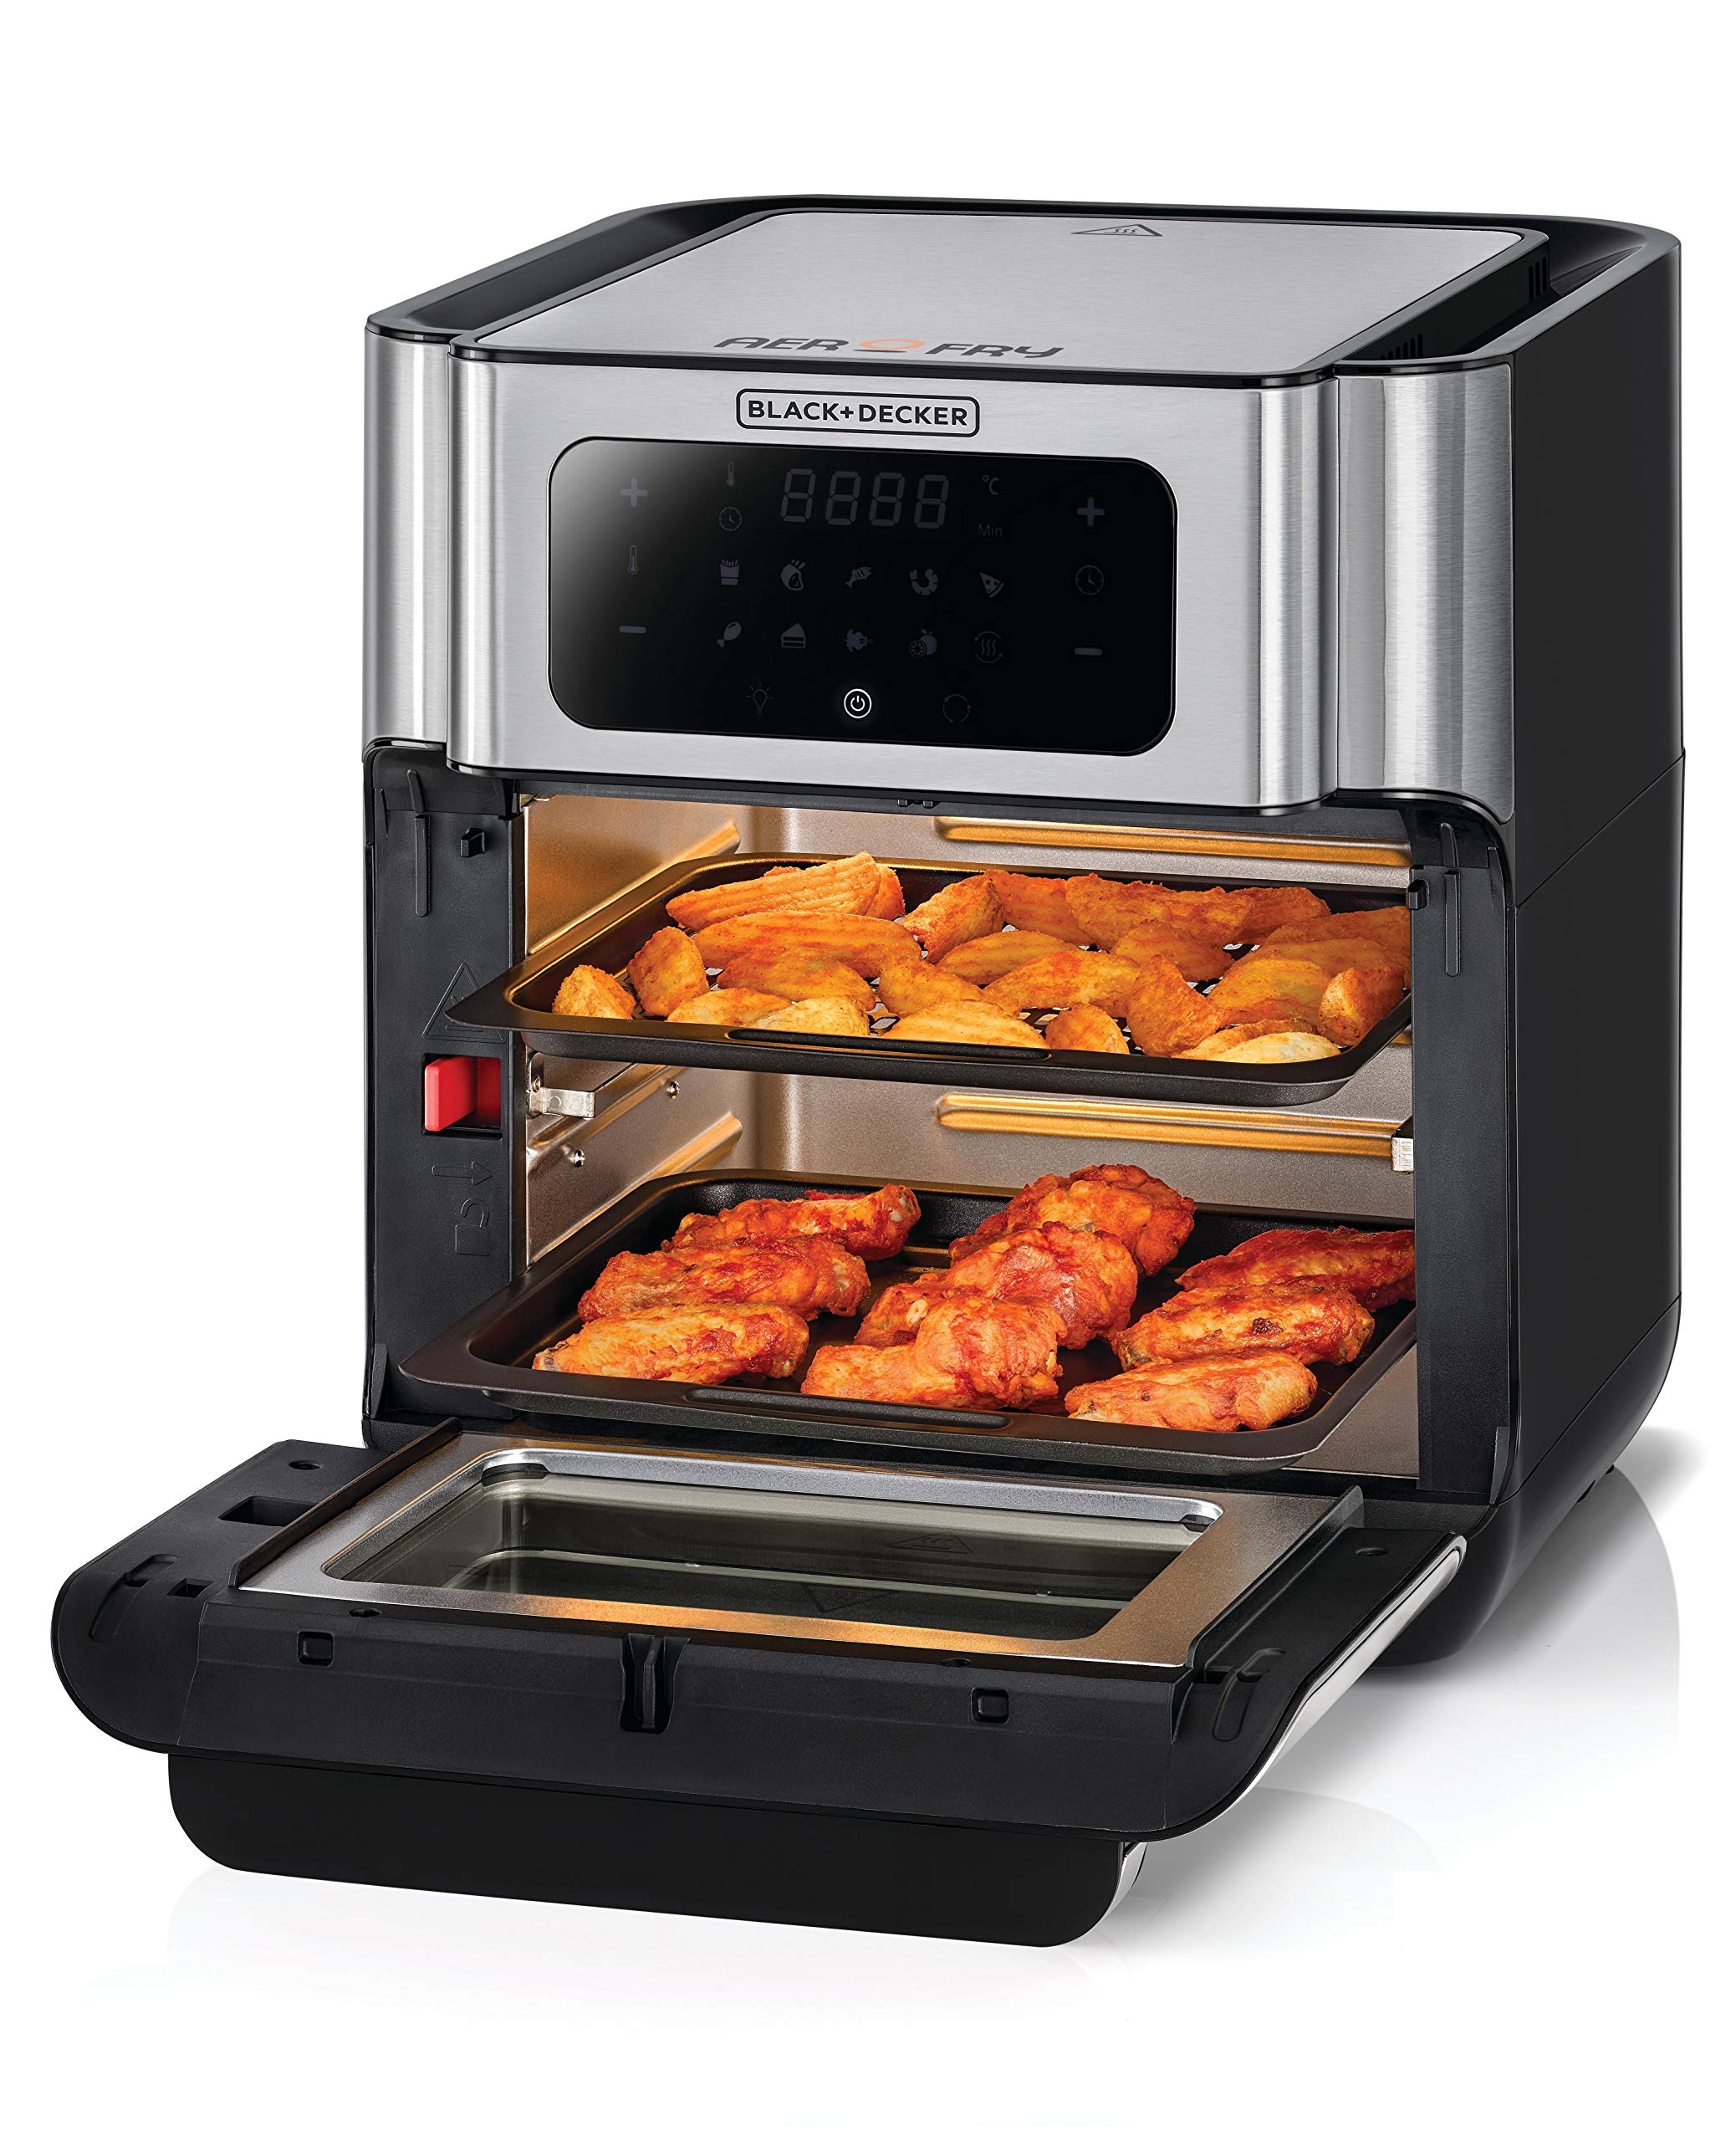 Black & Decker XL Digital Air Fryer Oven 1500W 12L, 10 Presets 360° Rapid Air Convection من بلاك + ديكر 1500 واط سعة 12 لتر، 10 اعدادات مسبقة وتقنية الحمل الحراري السريع 360 درجة للتحكم